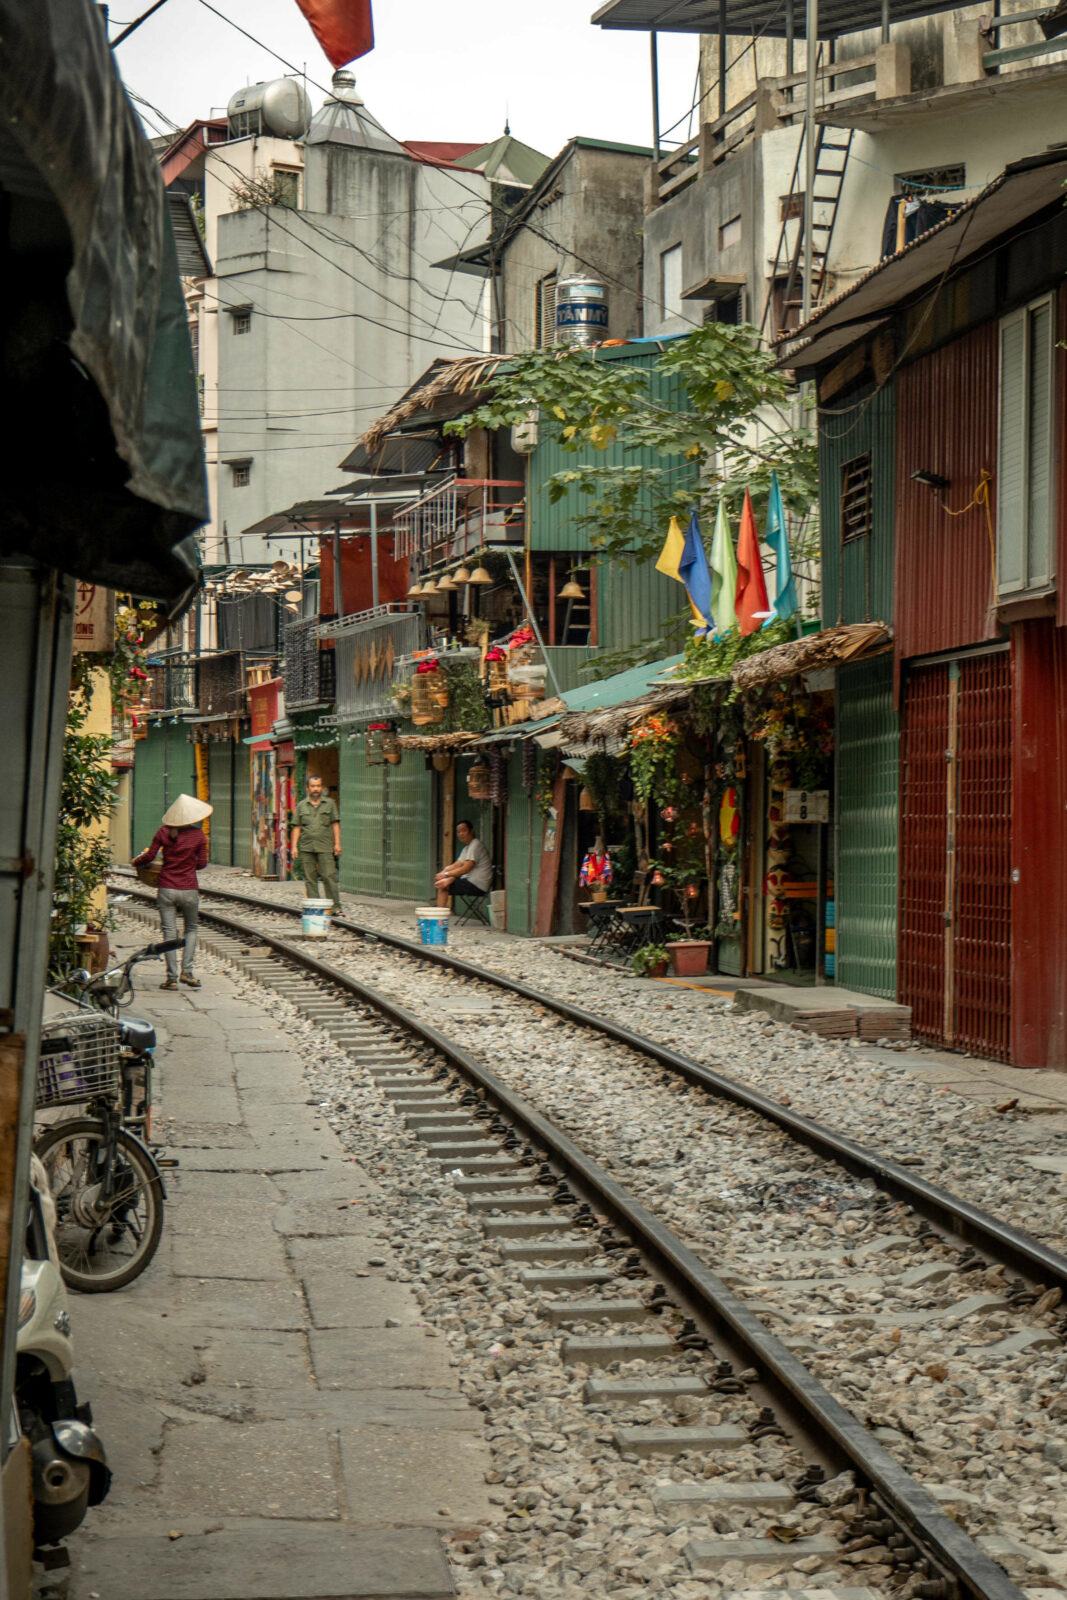 Gleise durch die engen Straßen von Hanoi